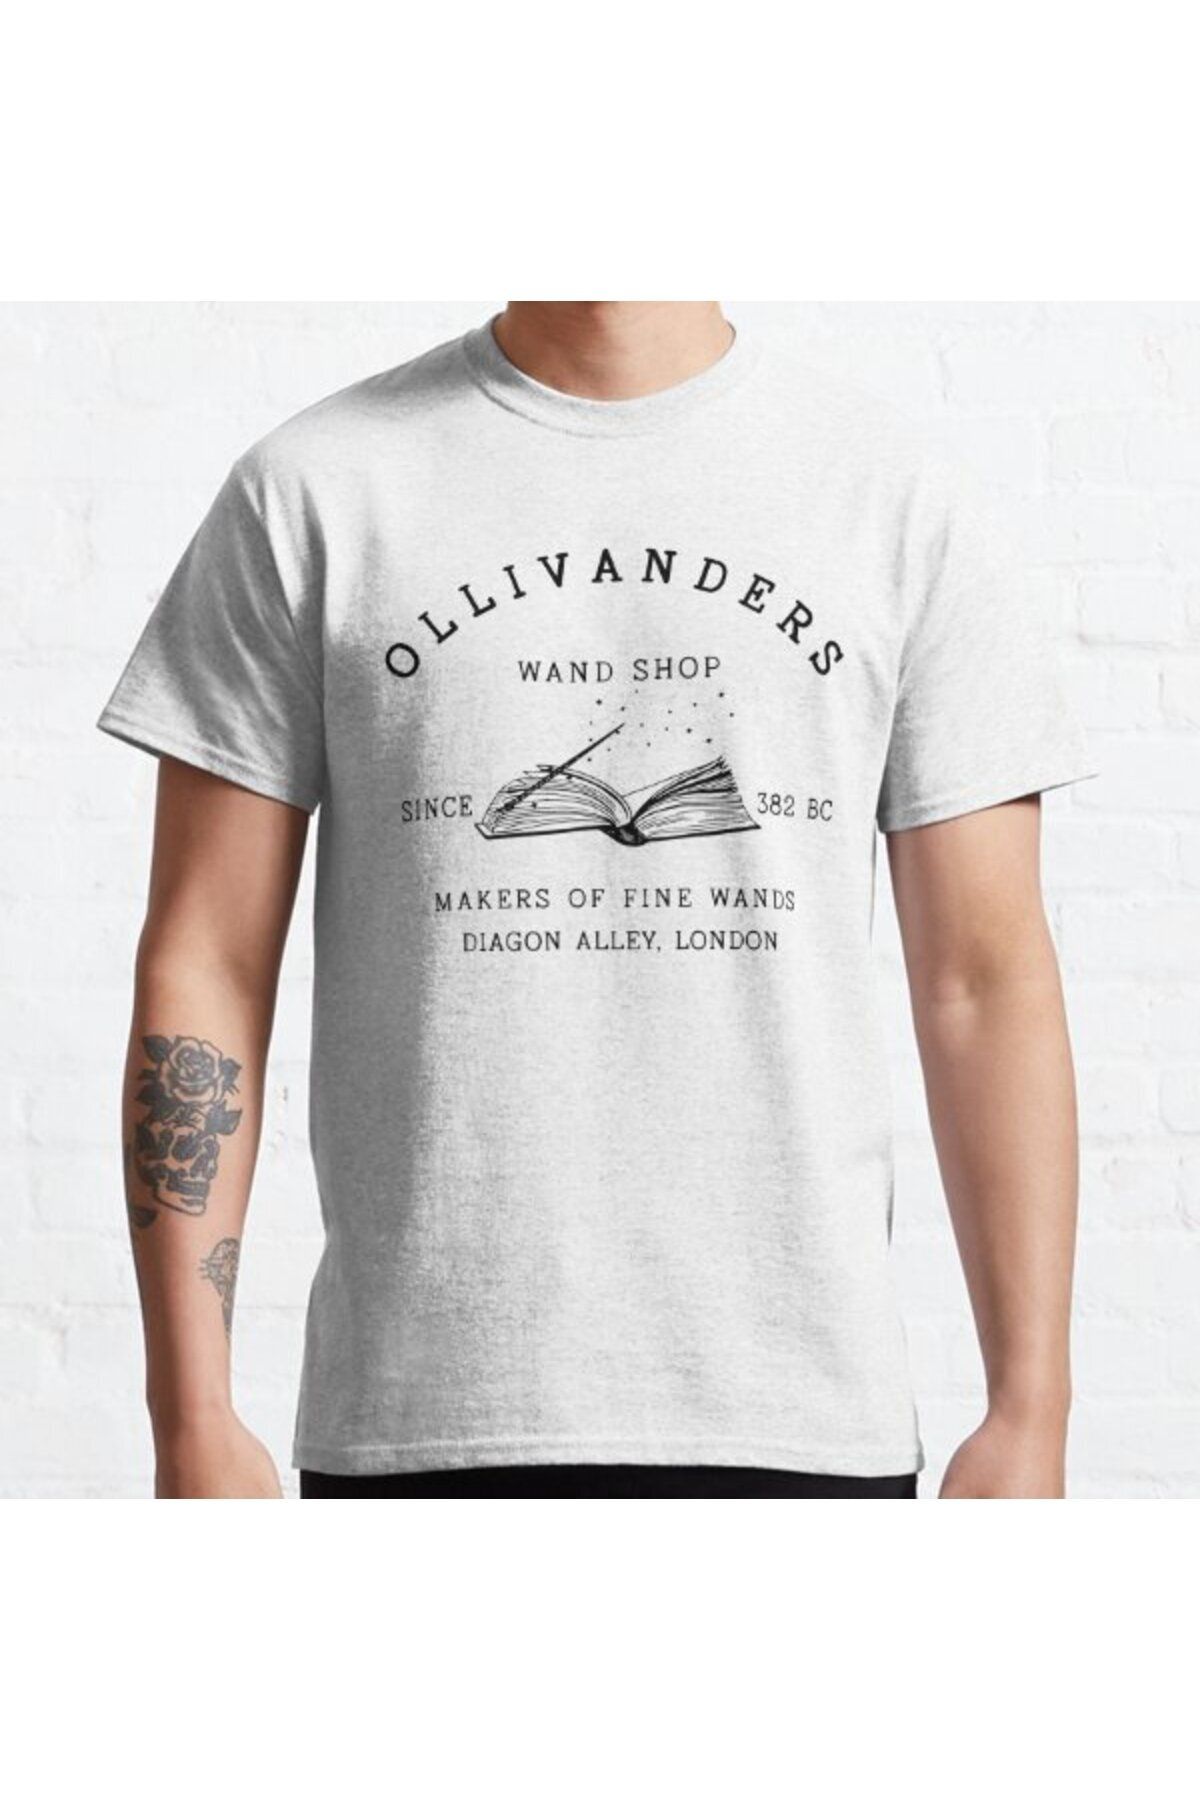 ZOKAWEAR Bol Kalıp Unisex Ollivanders Wand Shop Pottery Fan Wizard Wand Harry Potter Tasarım Baskılı Tshirt